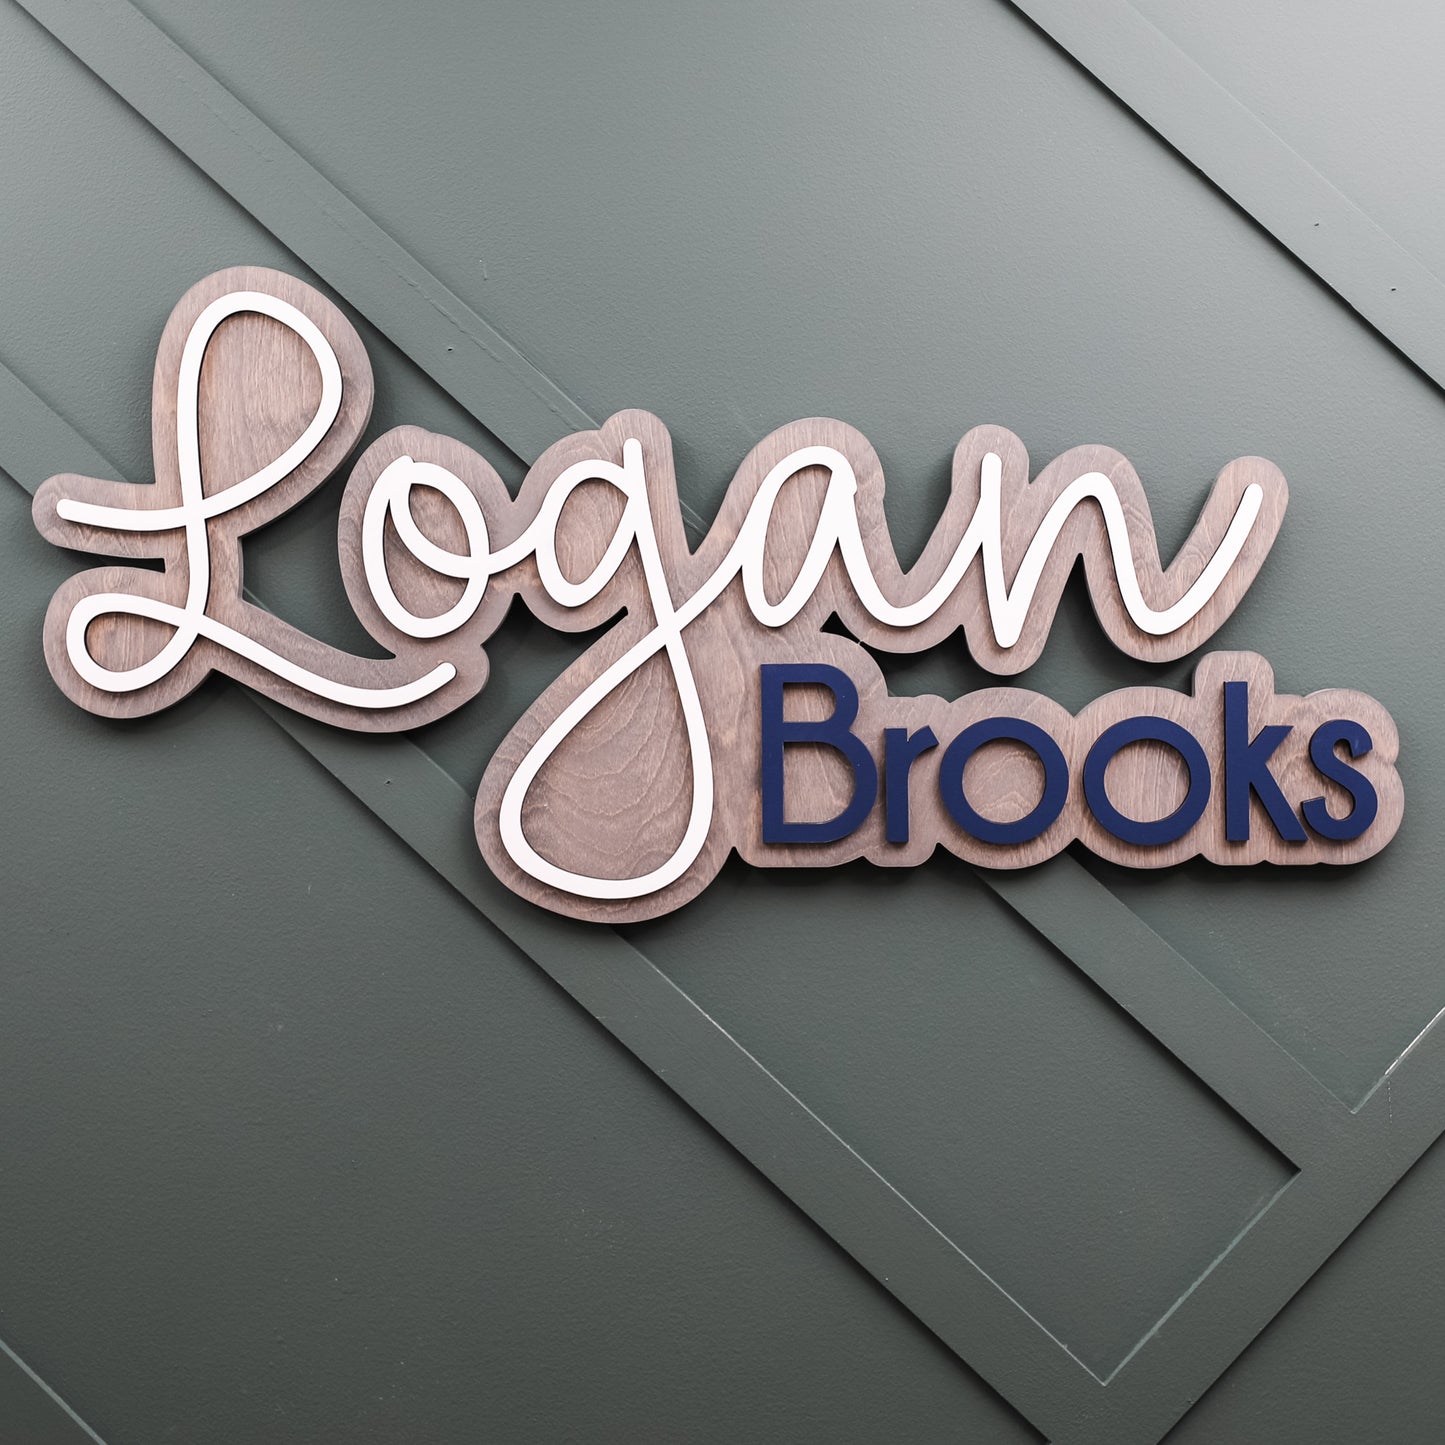 Logan Brooks Outline Design